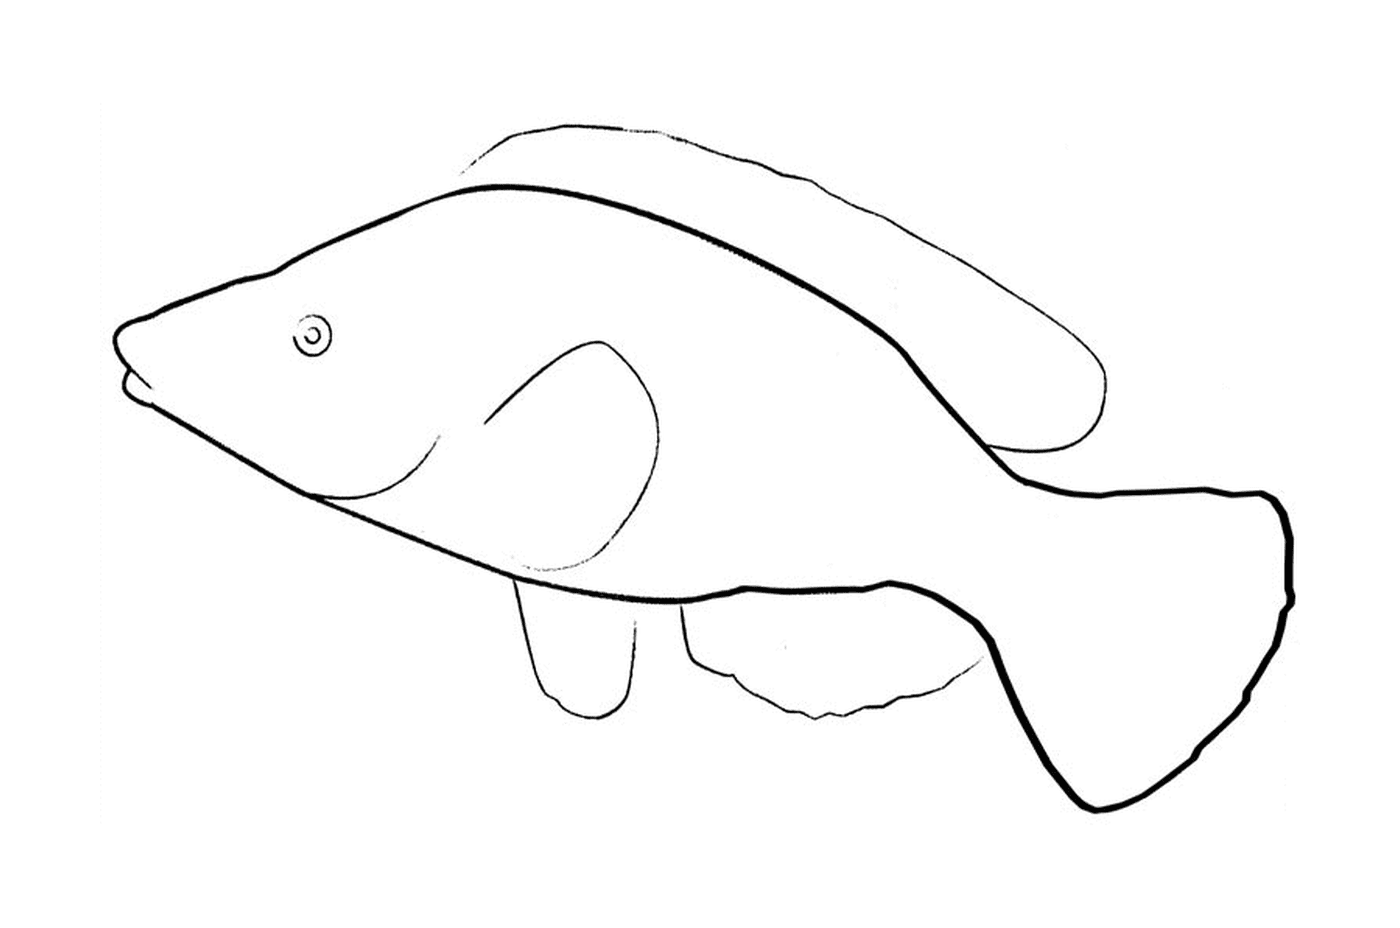  Dibujo de peces Abril 